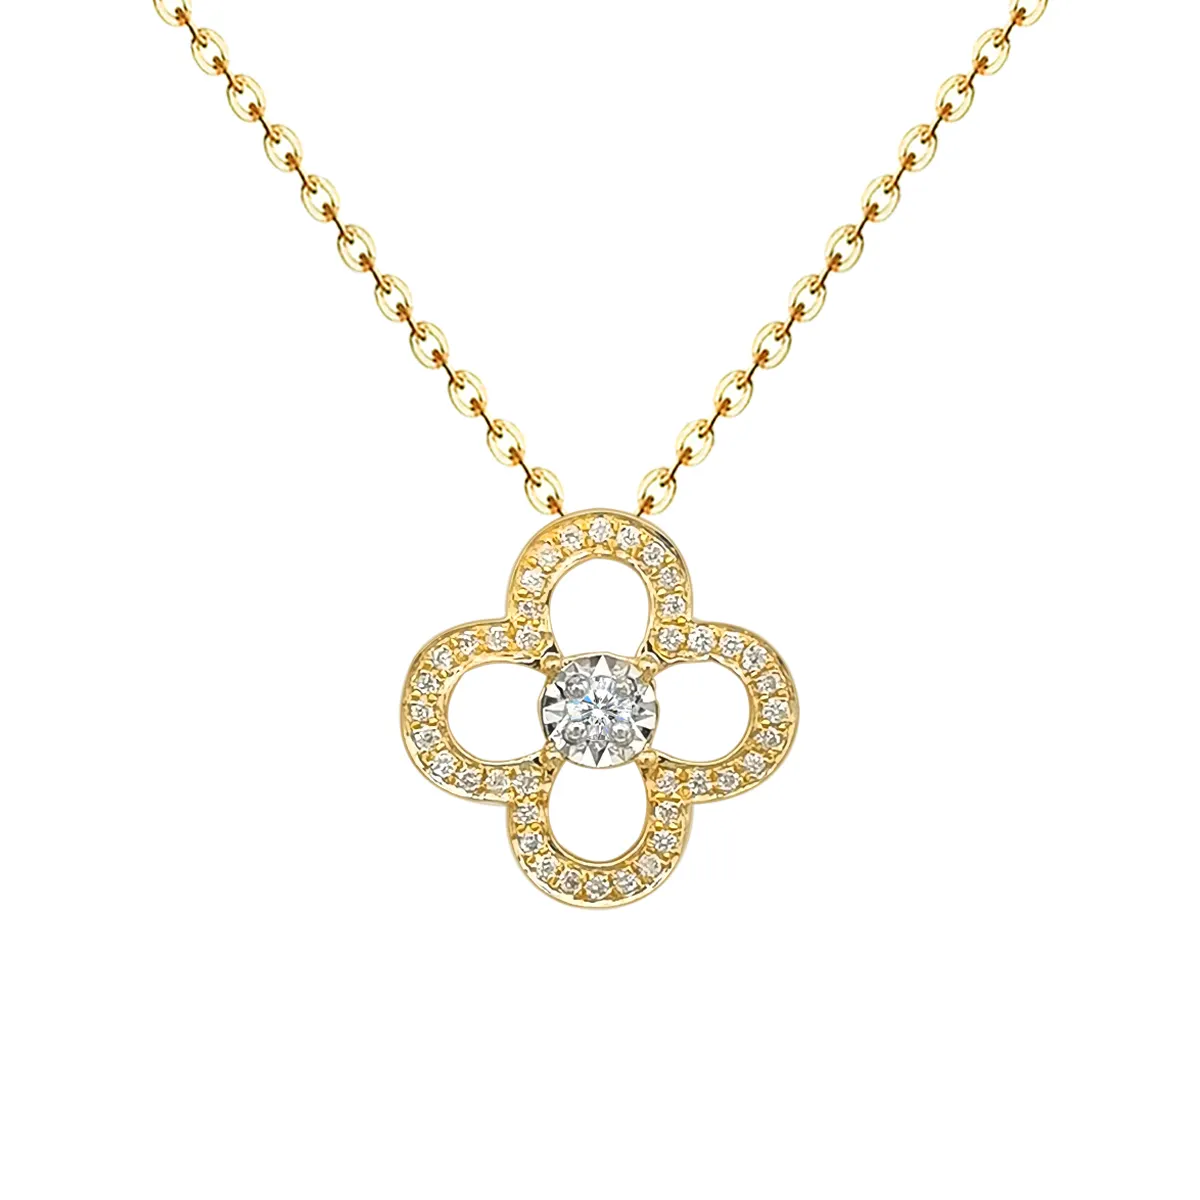 Colar com pingente de diamante, colar luxuoso design clássico de moda 18k, joia fina, dourada